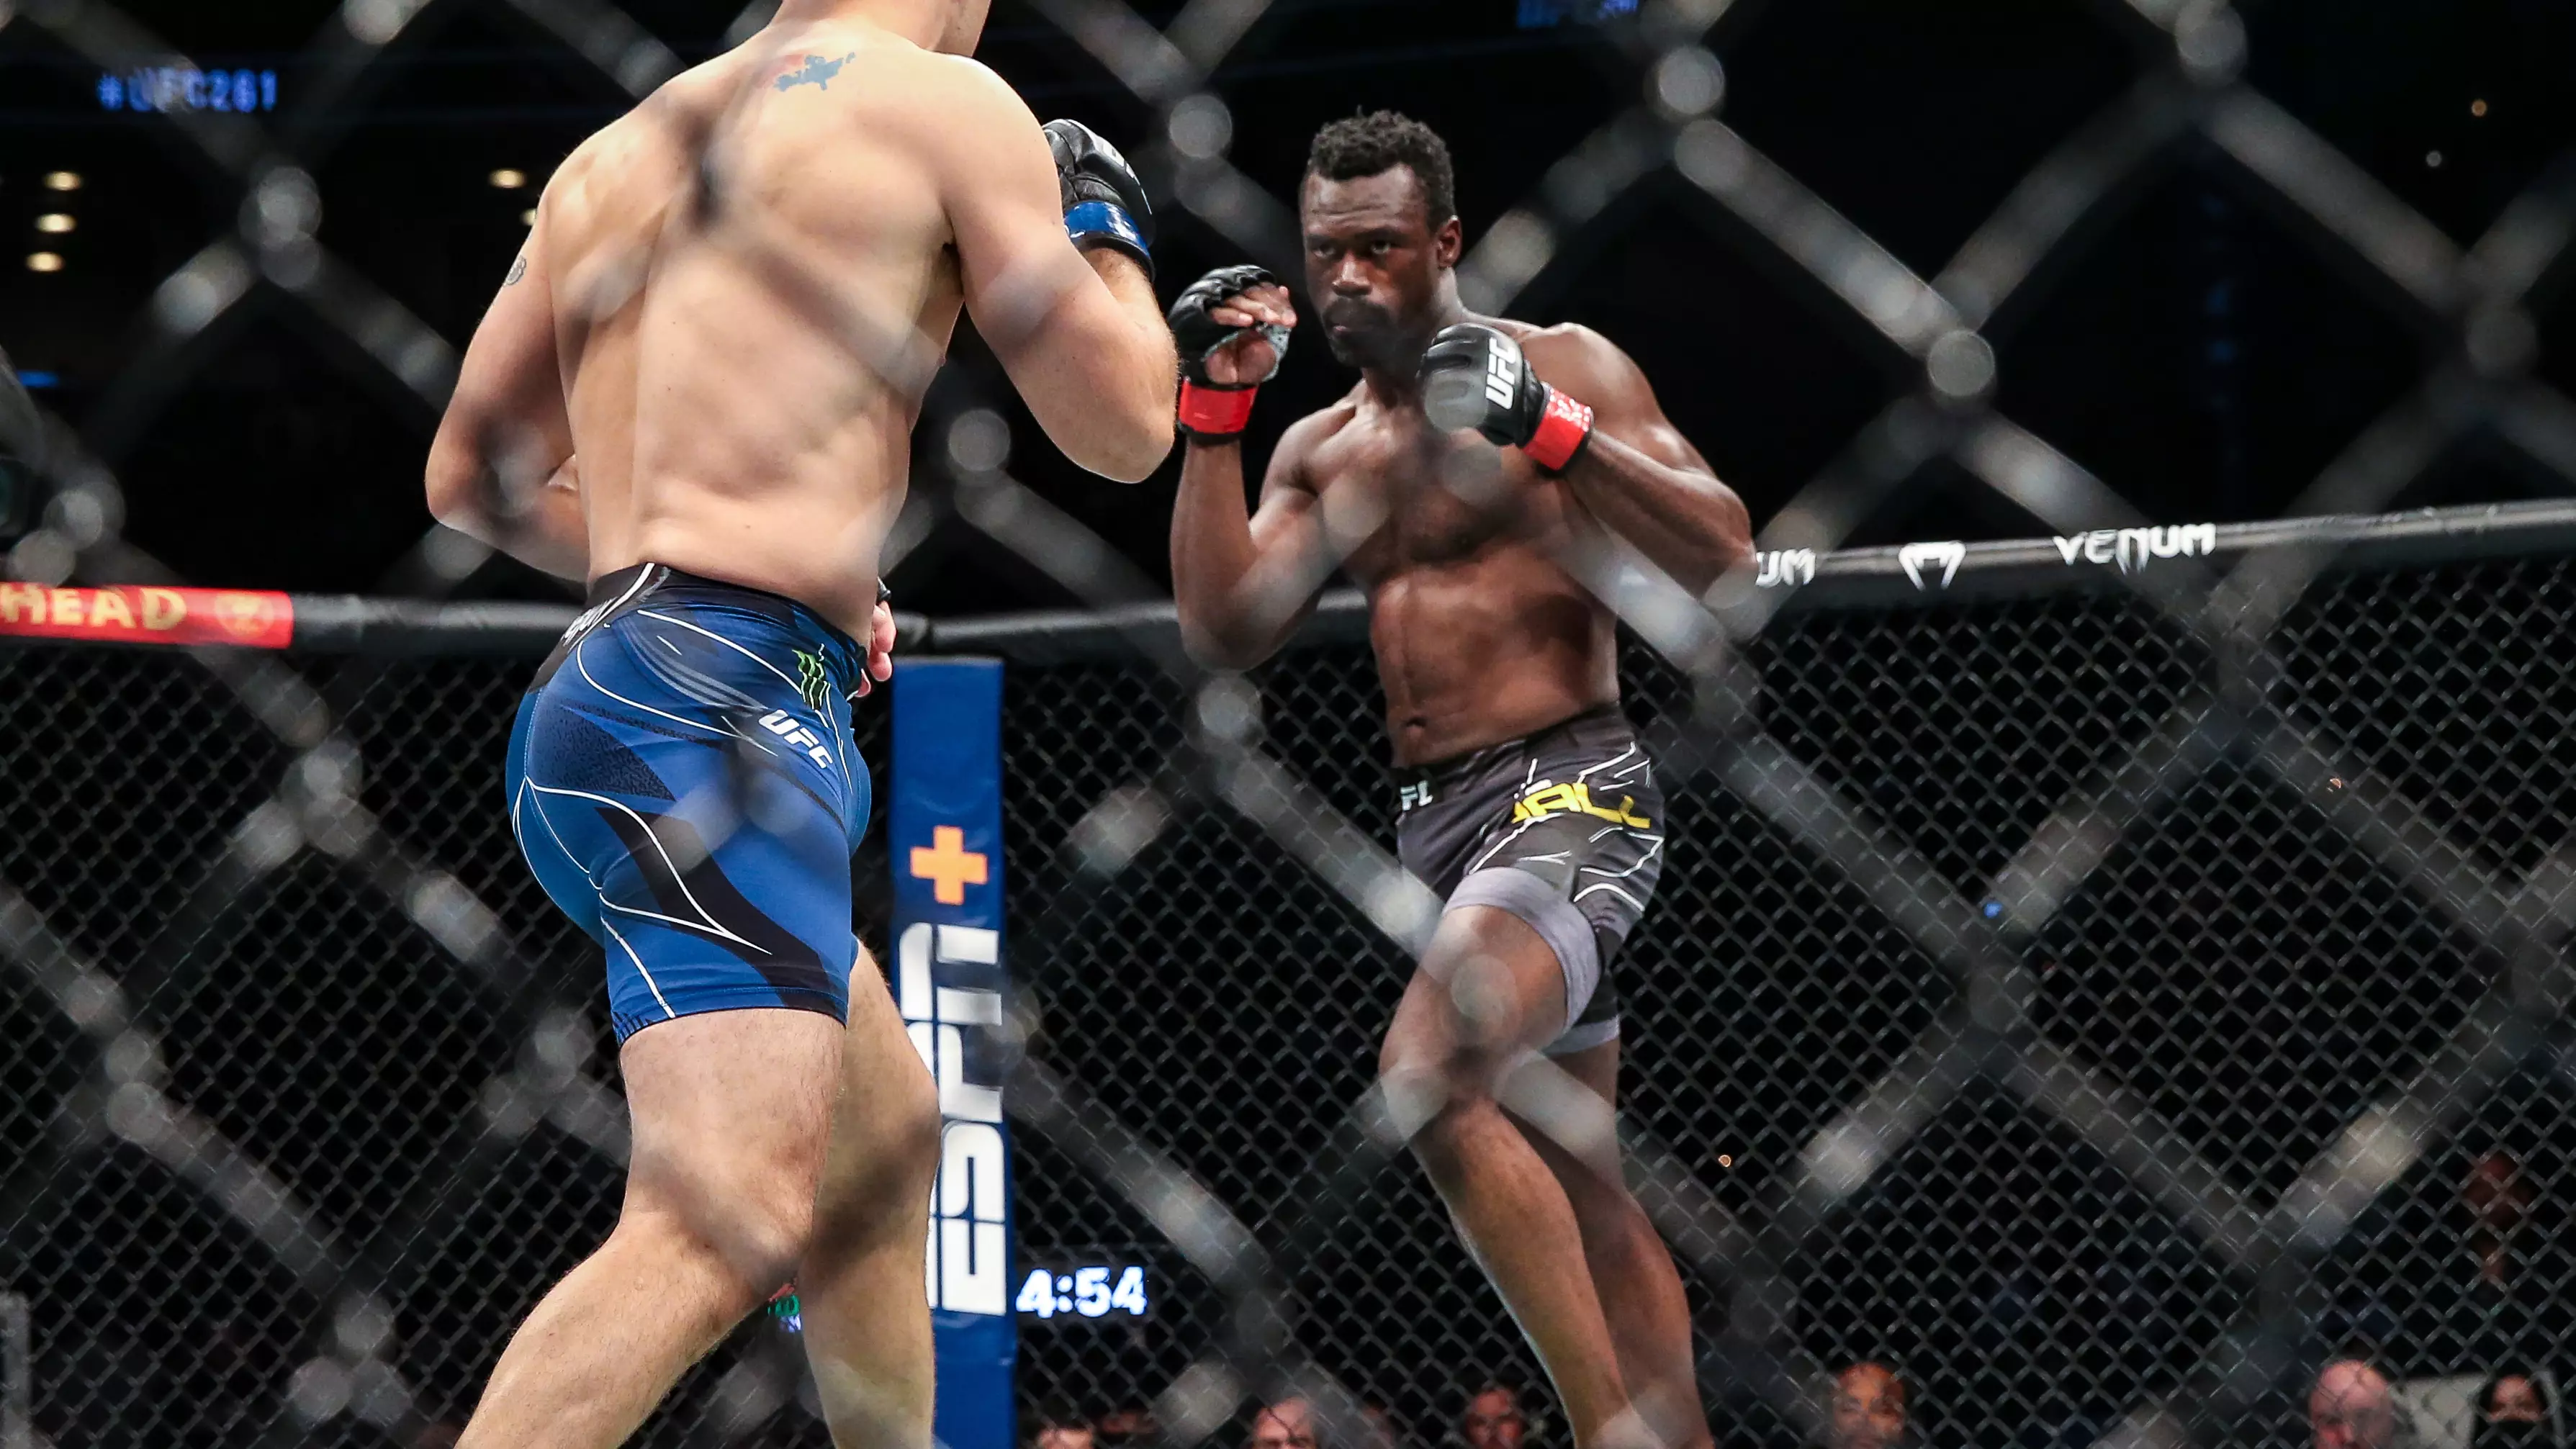 Chris Weidman Snaps Leg During Clash With Uriah Hall At UFC 261 